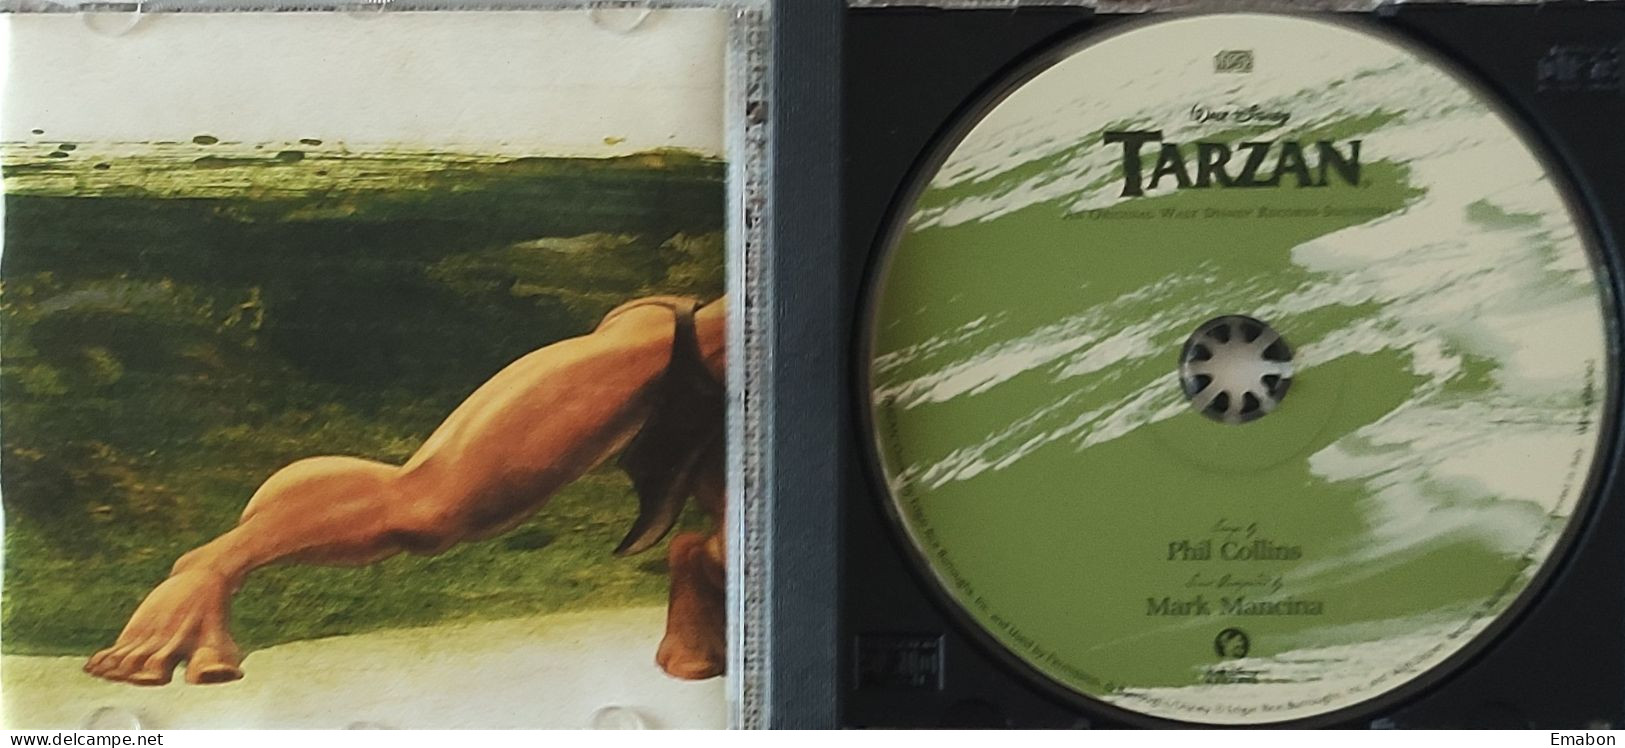 BORGATTA - FILM MUSIC  - Cd  PHIL COLLINS - TARZAN - WALT DISNEY RECORDS 1999 - USATO In Buono Stato - Soundtracks, Film Music